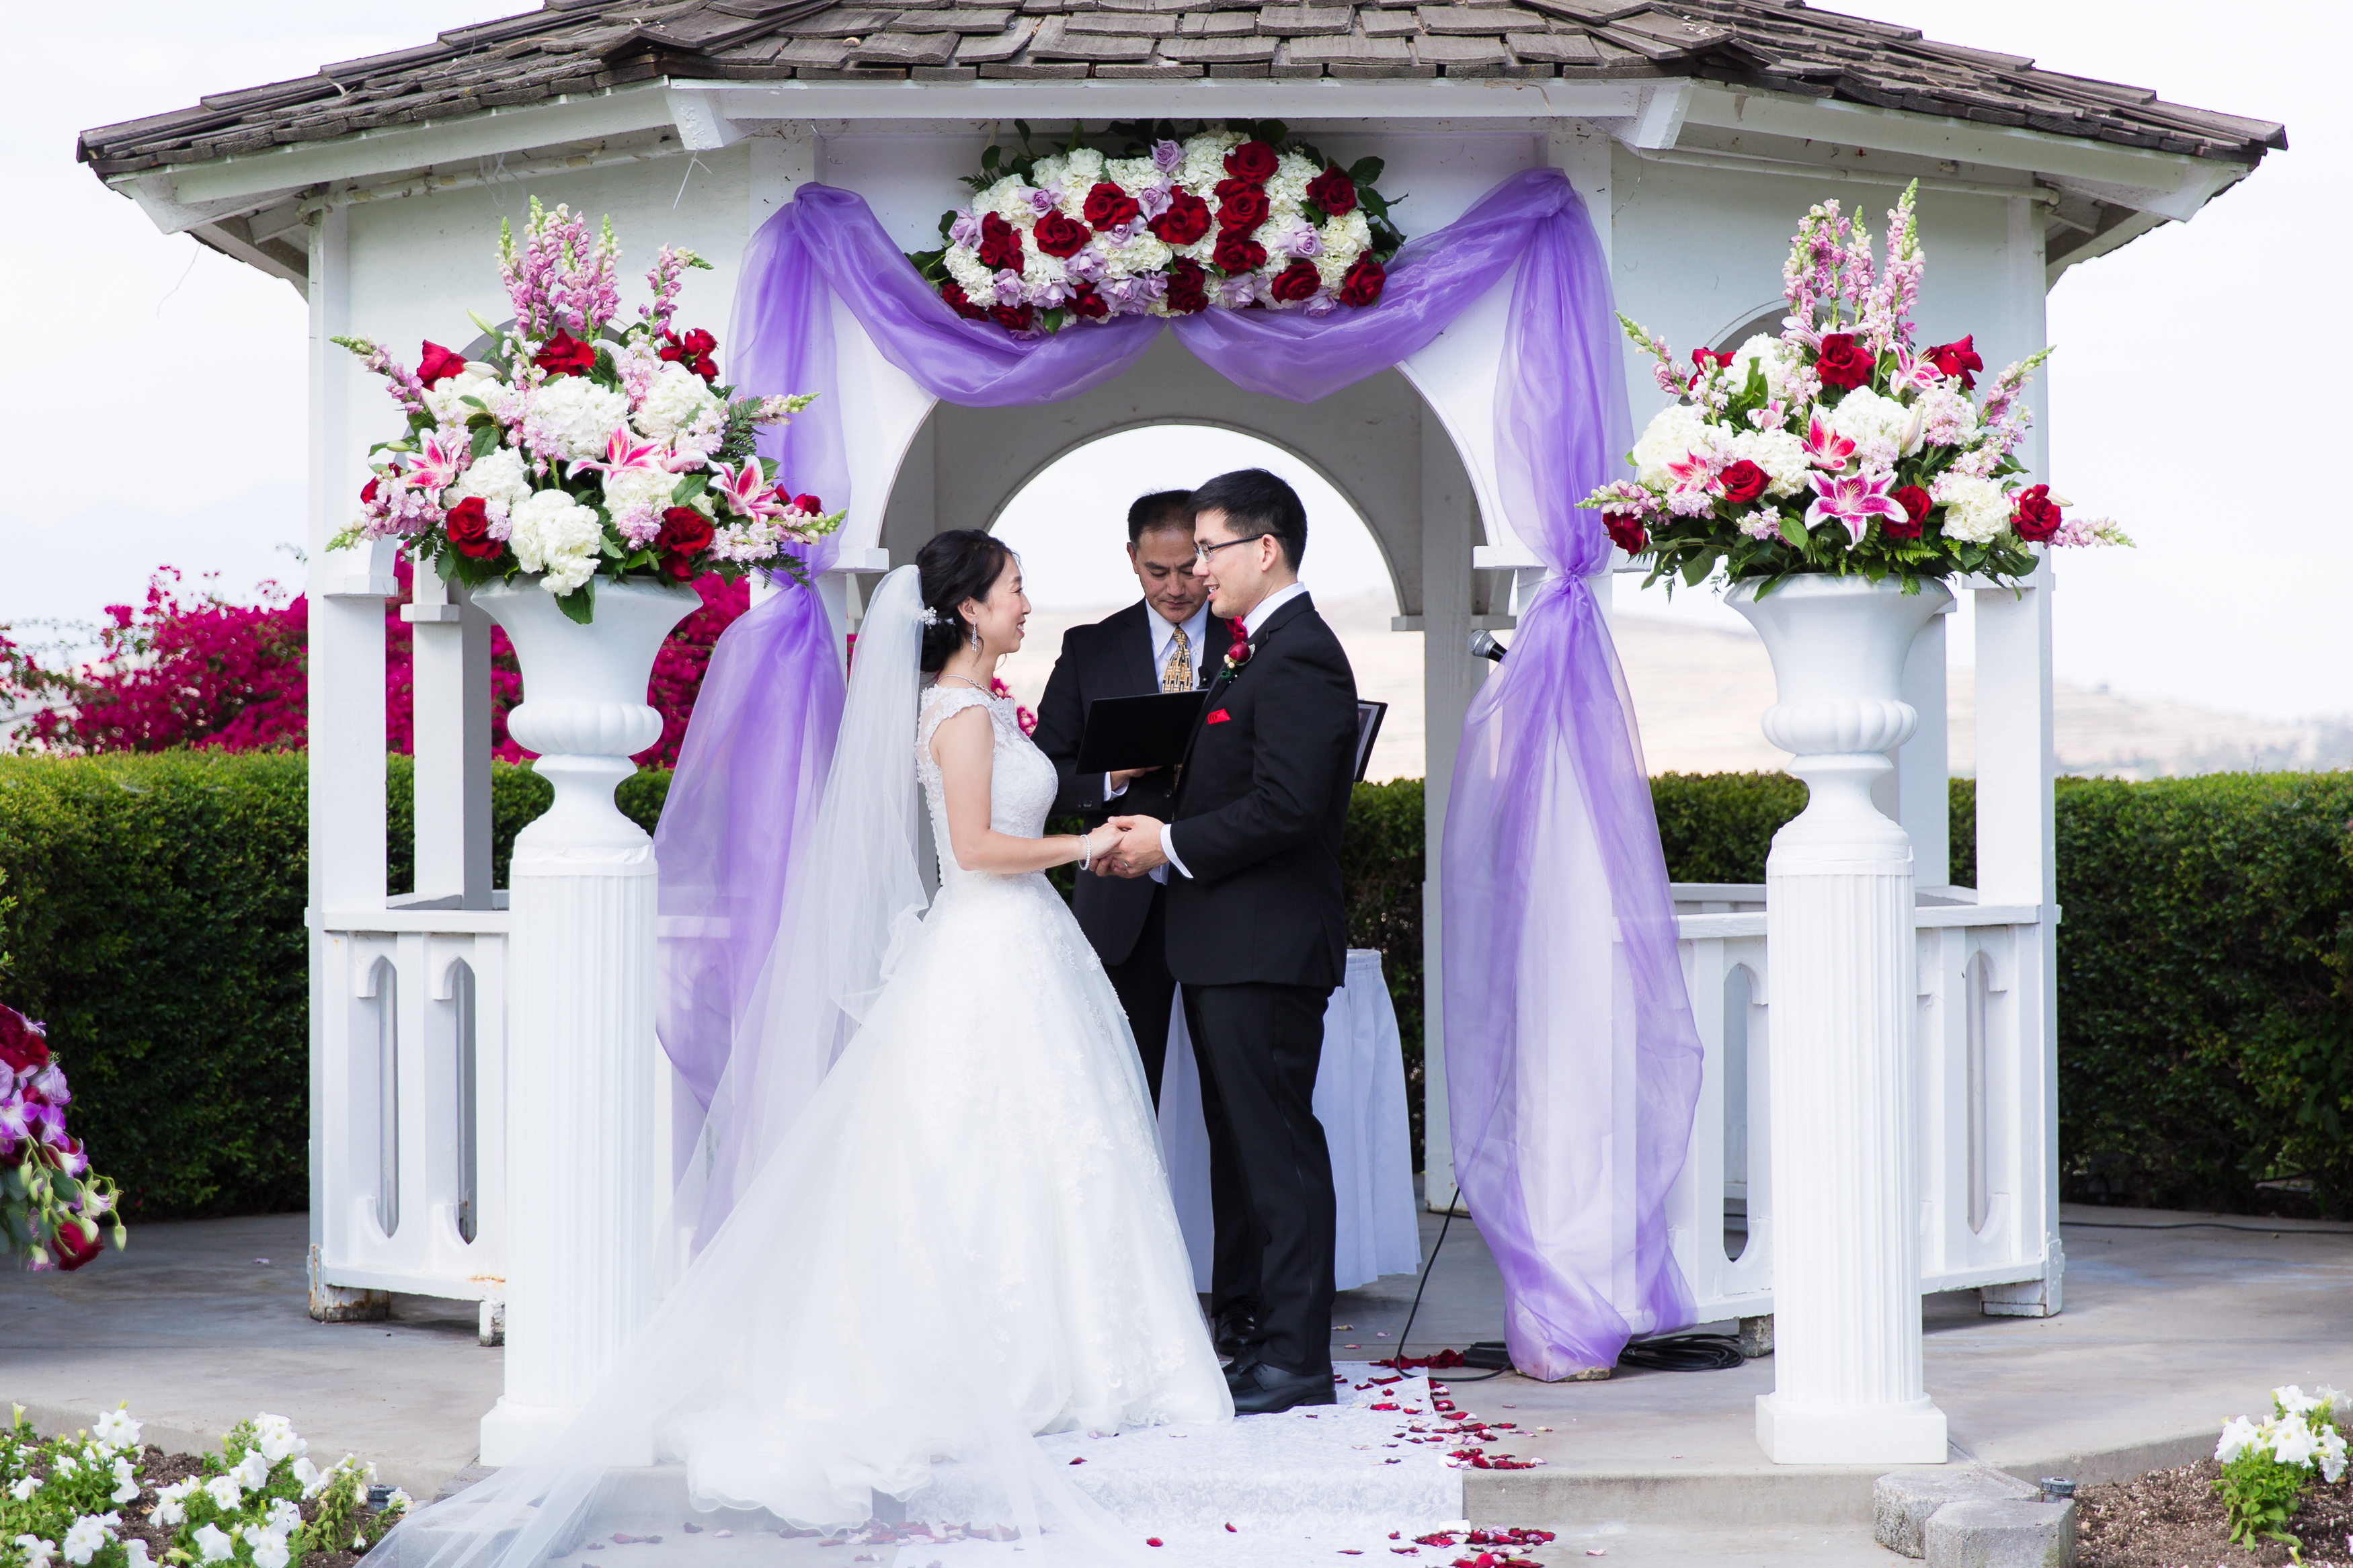 Wedding couple holding hands under gazebo during wedding ceremony